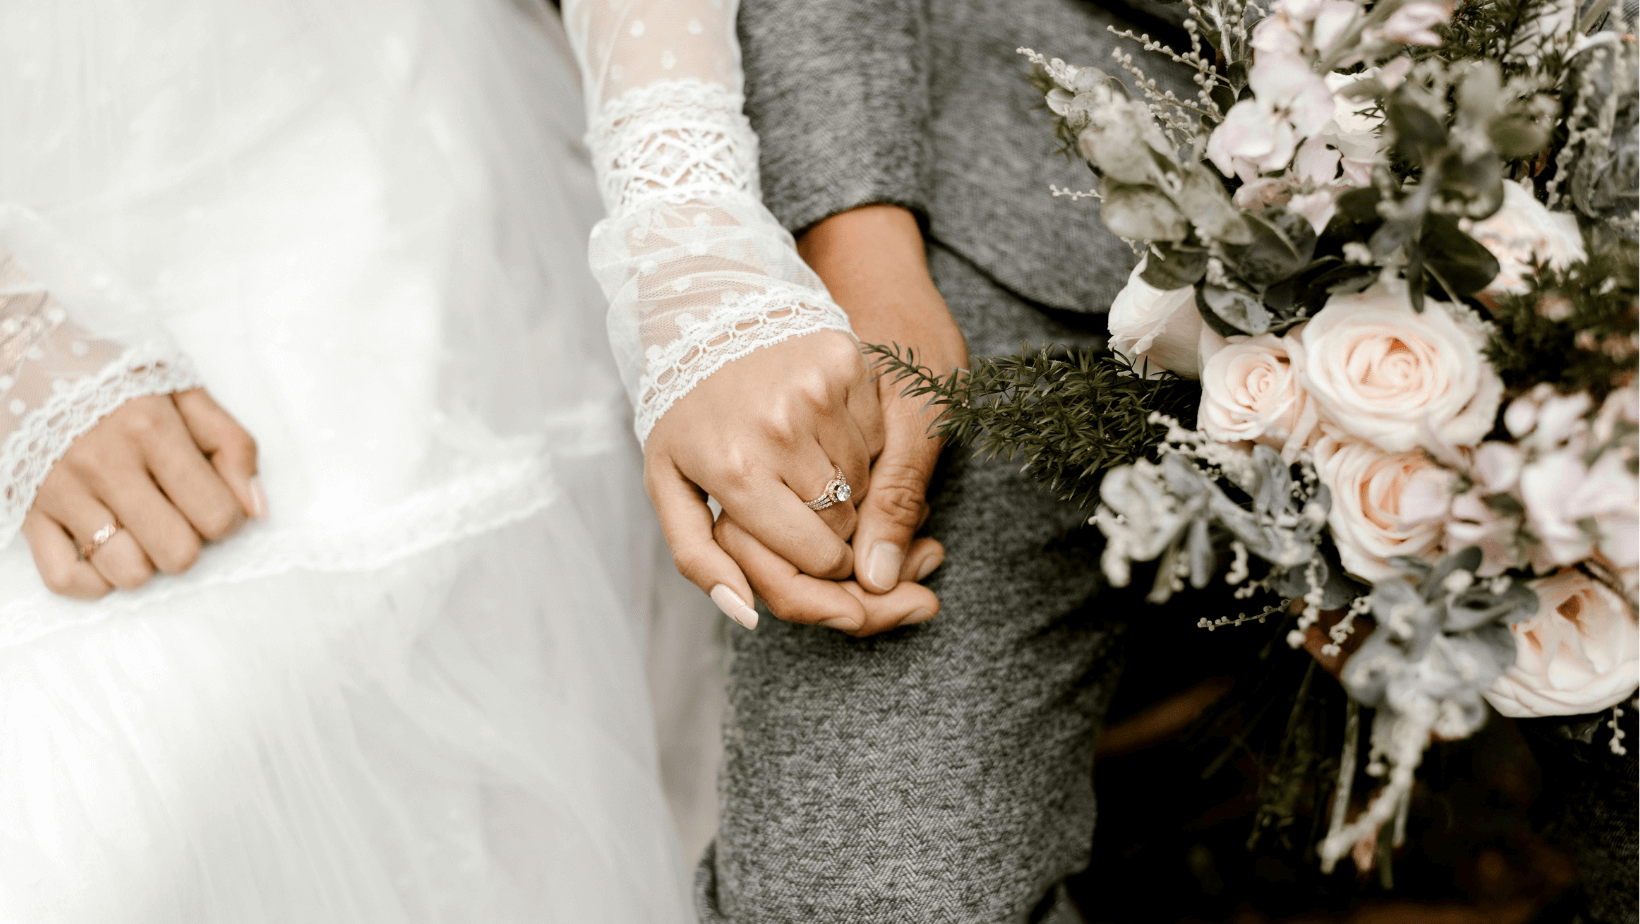 Brautpaar hält Händchen: Wie viel Geld schenkt man zur Hochzeit?